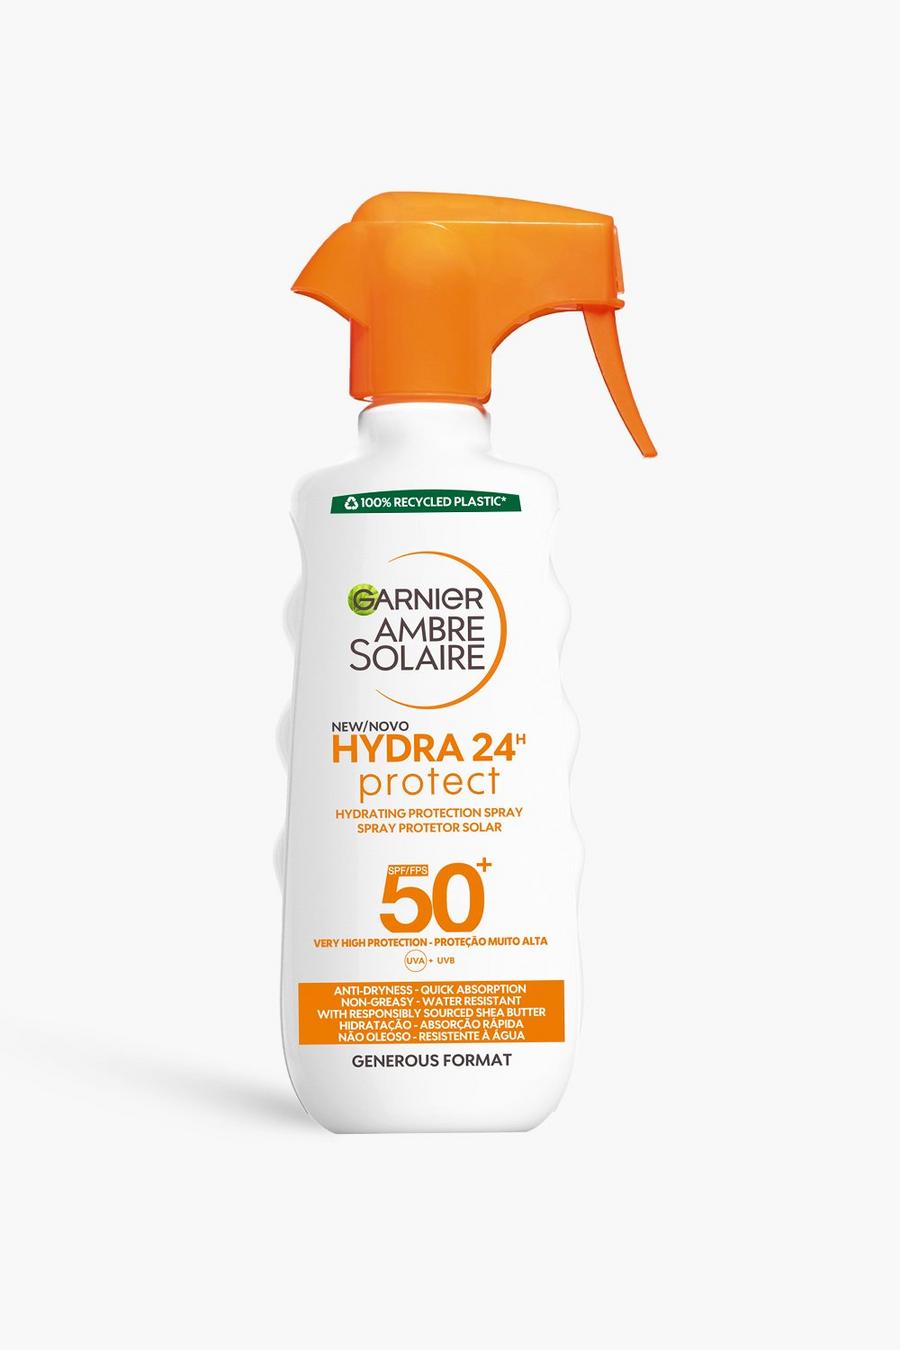 Garnier Ambre Solaire - Crema solare spray idratante, protezione SPF 50 per 24 ore da raggi UVA & UVB, 300 ml (RISPARMI IL 31%), White bianco